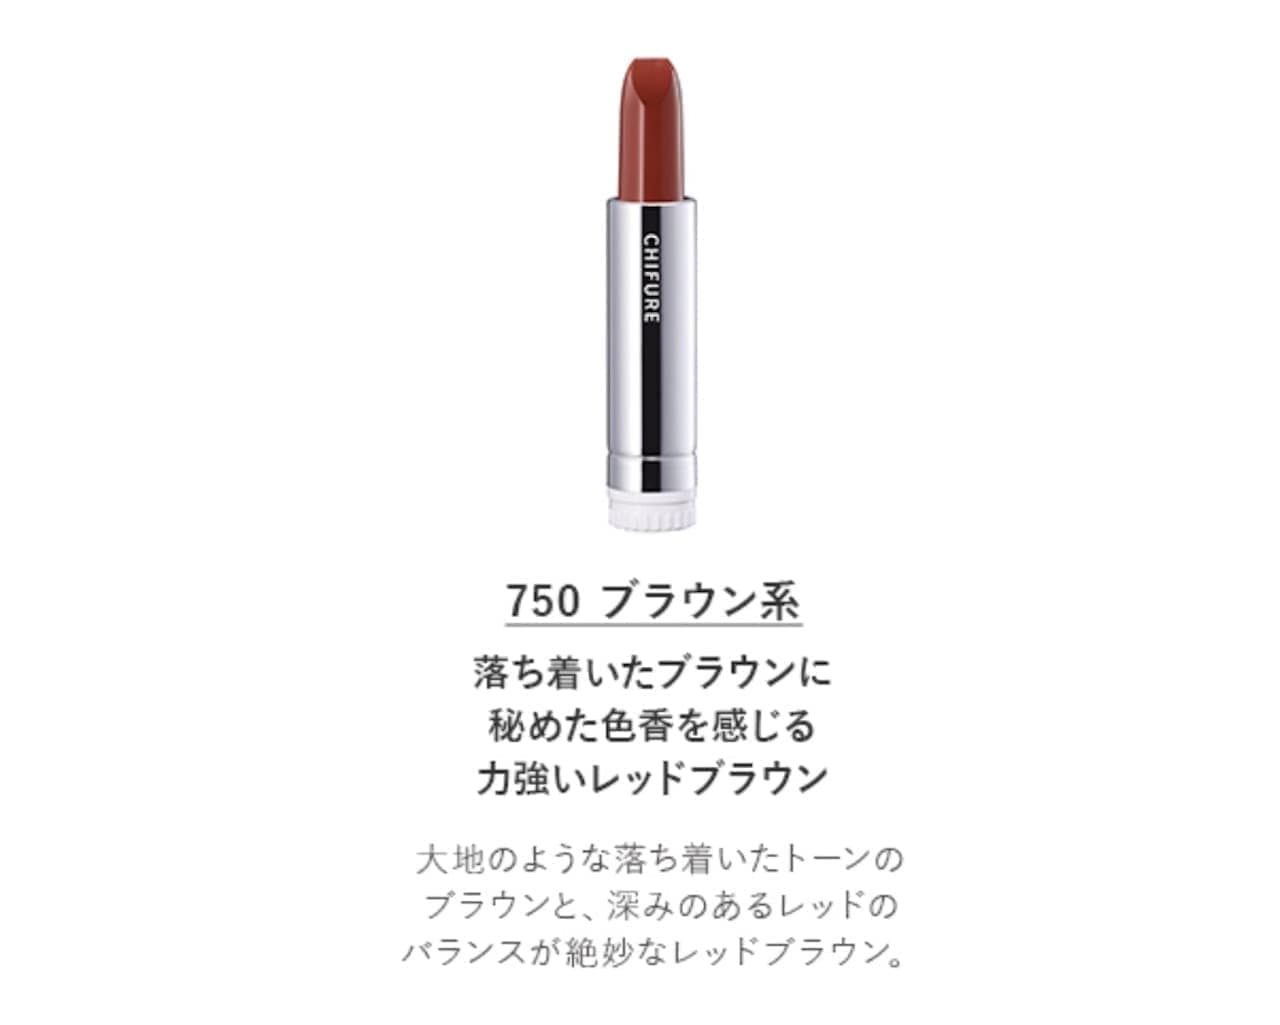 Chifure Lipstick (Refill) 750